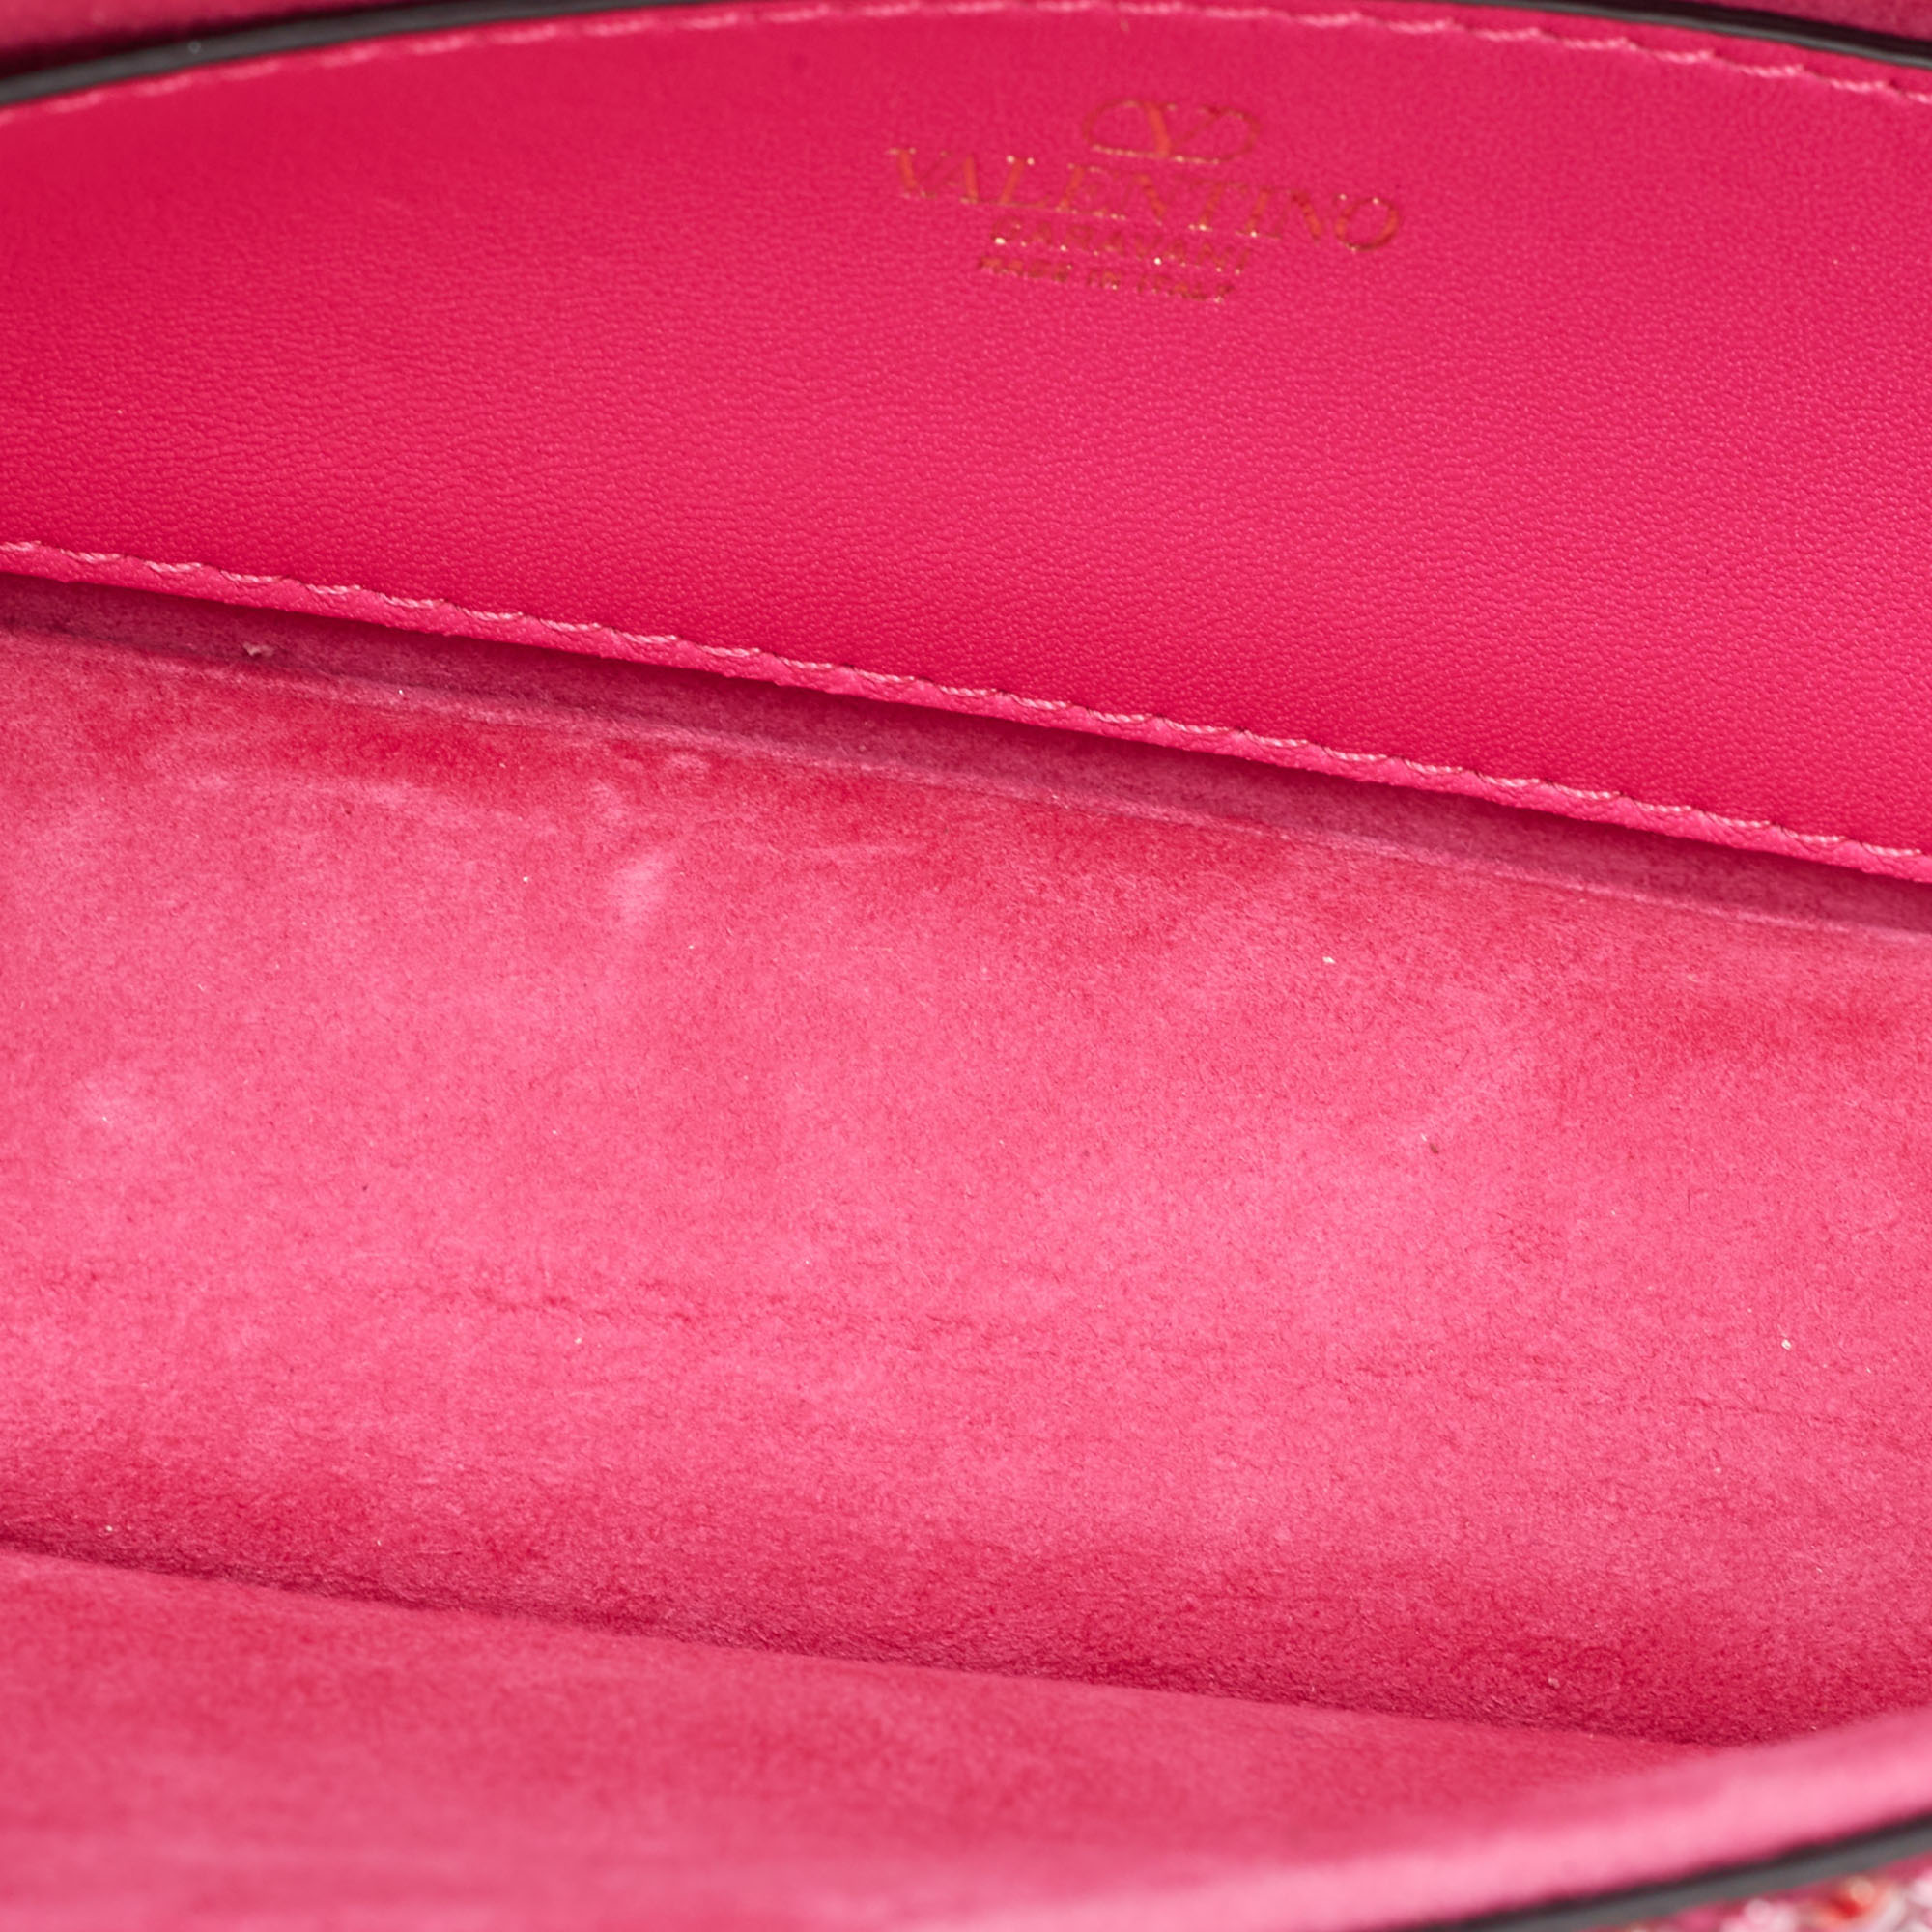 Valentino Magenta Crystal Embellished Small Loco Shoulder Bag